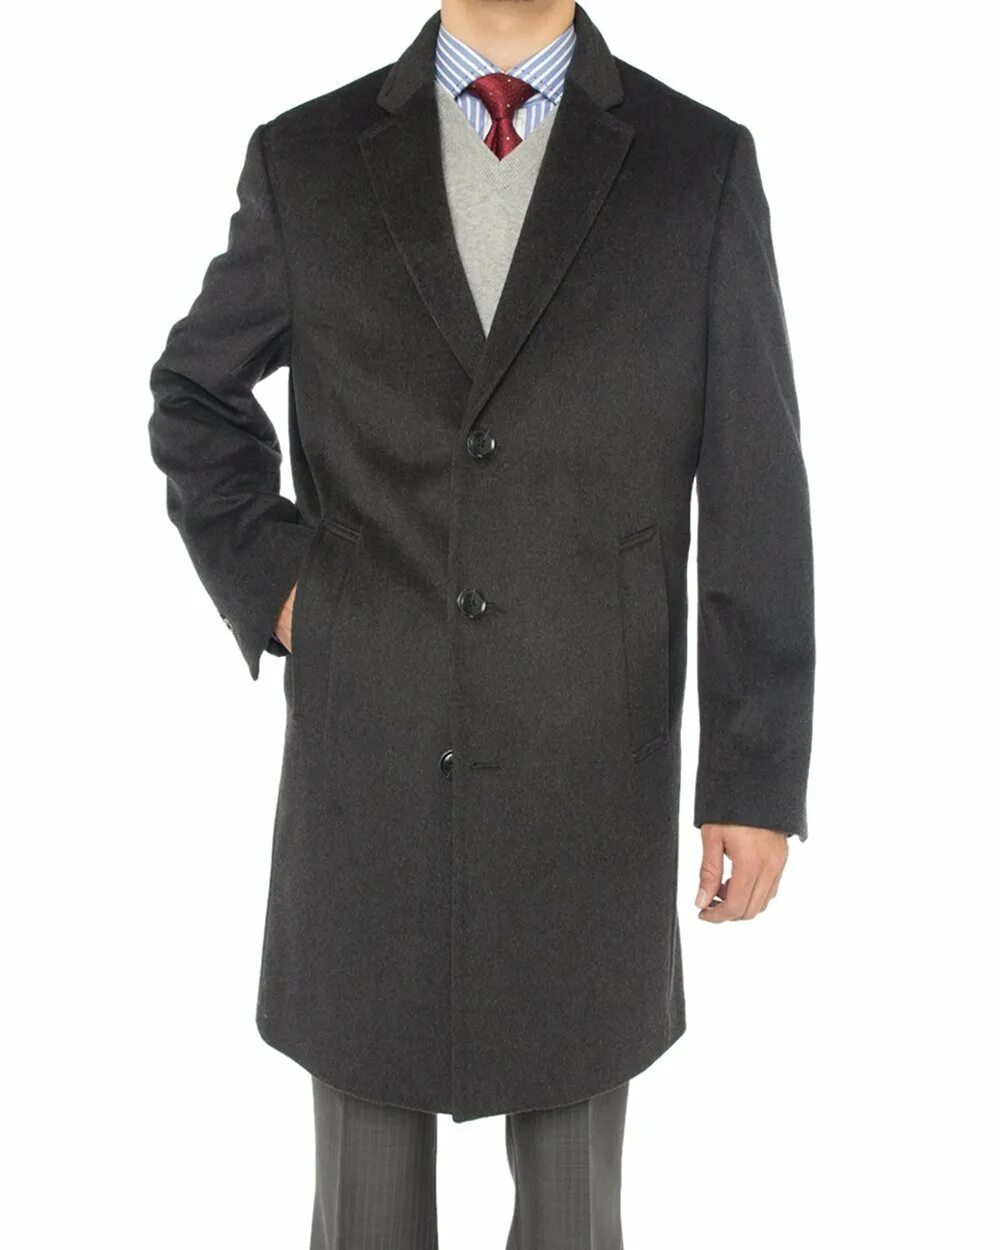 Мужской кашемир. Пальто Canali мужское. Windsor пальто мужское кашемировое. Кашемировое пальто мужское черное. Кашемир пальто мужское.